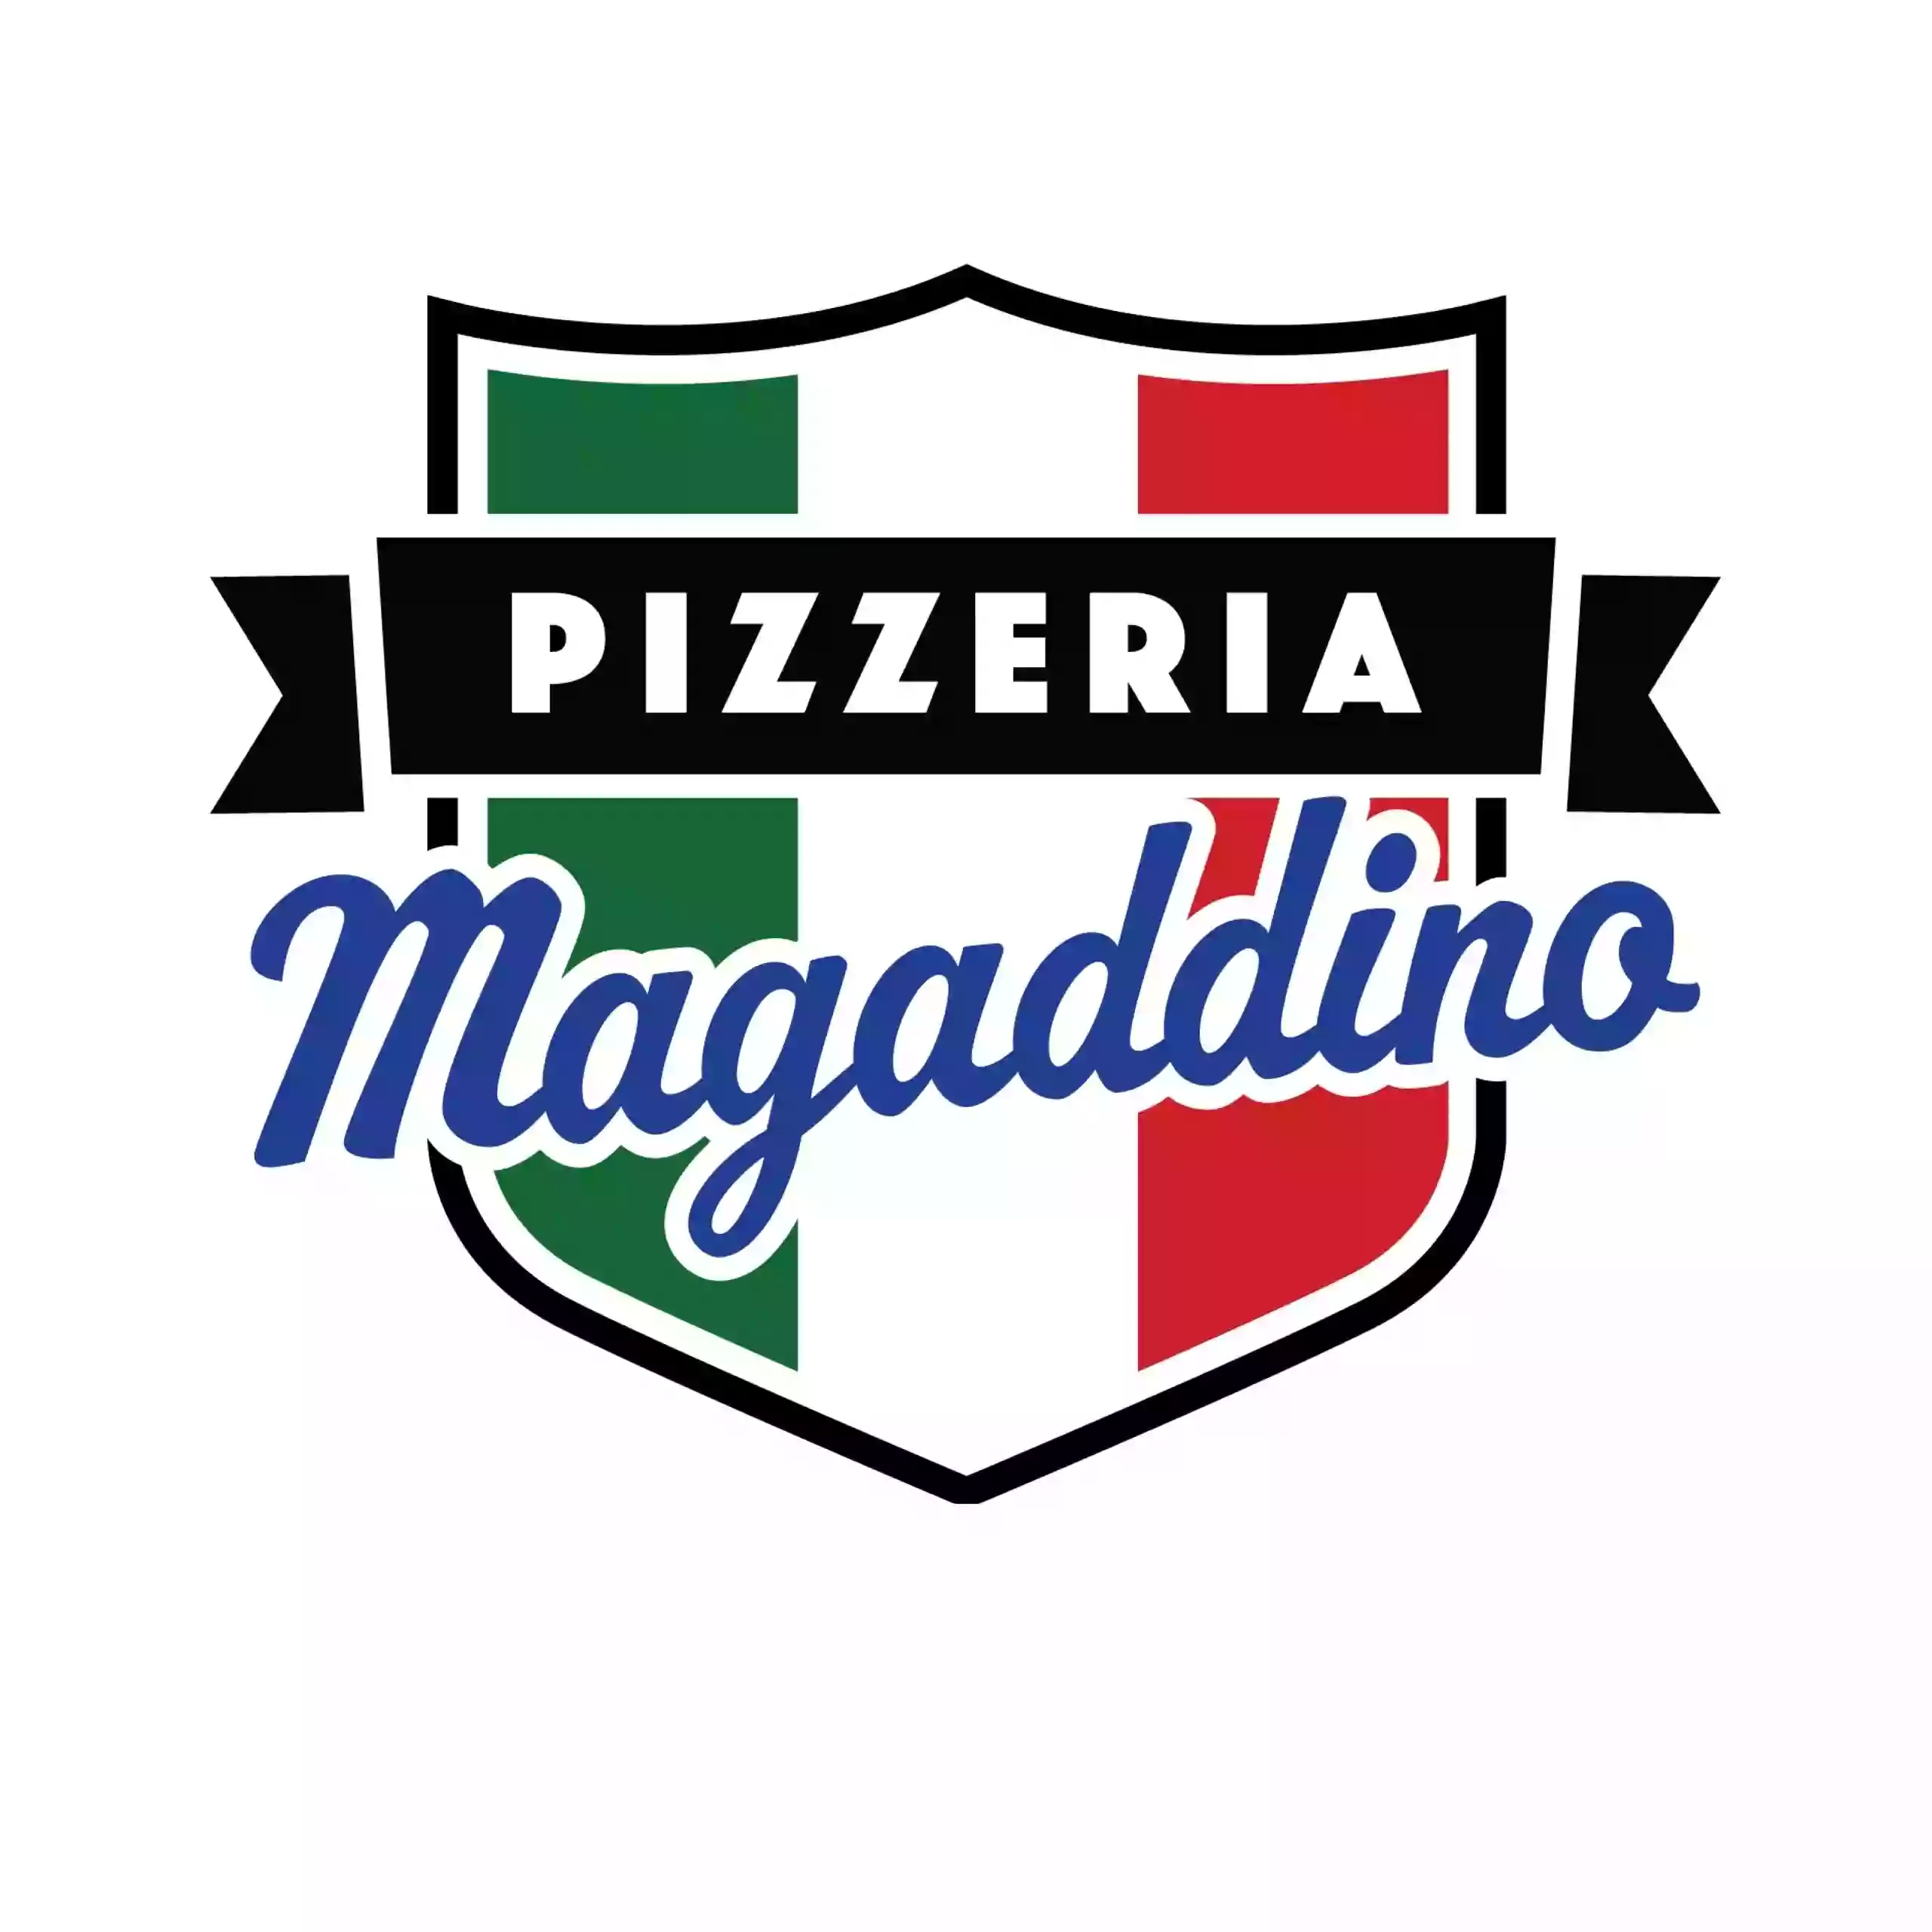 Pizzeria Magaddino